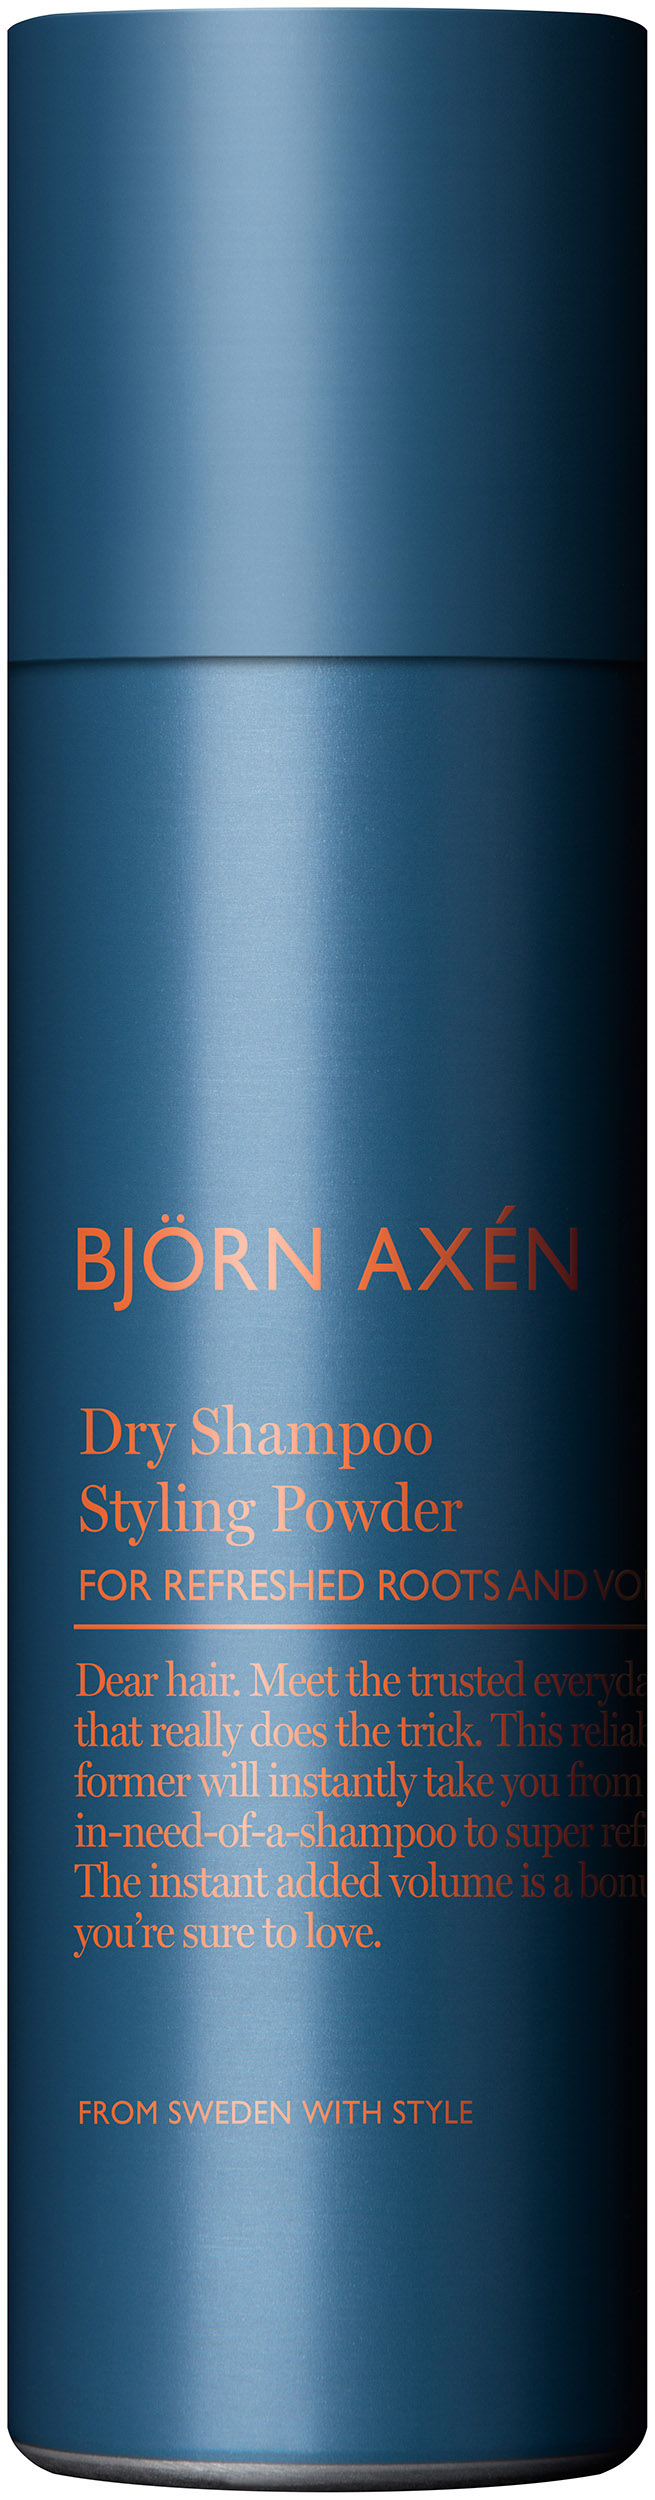 Björn Axén Styling powder dry schampoo 200 ml